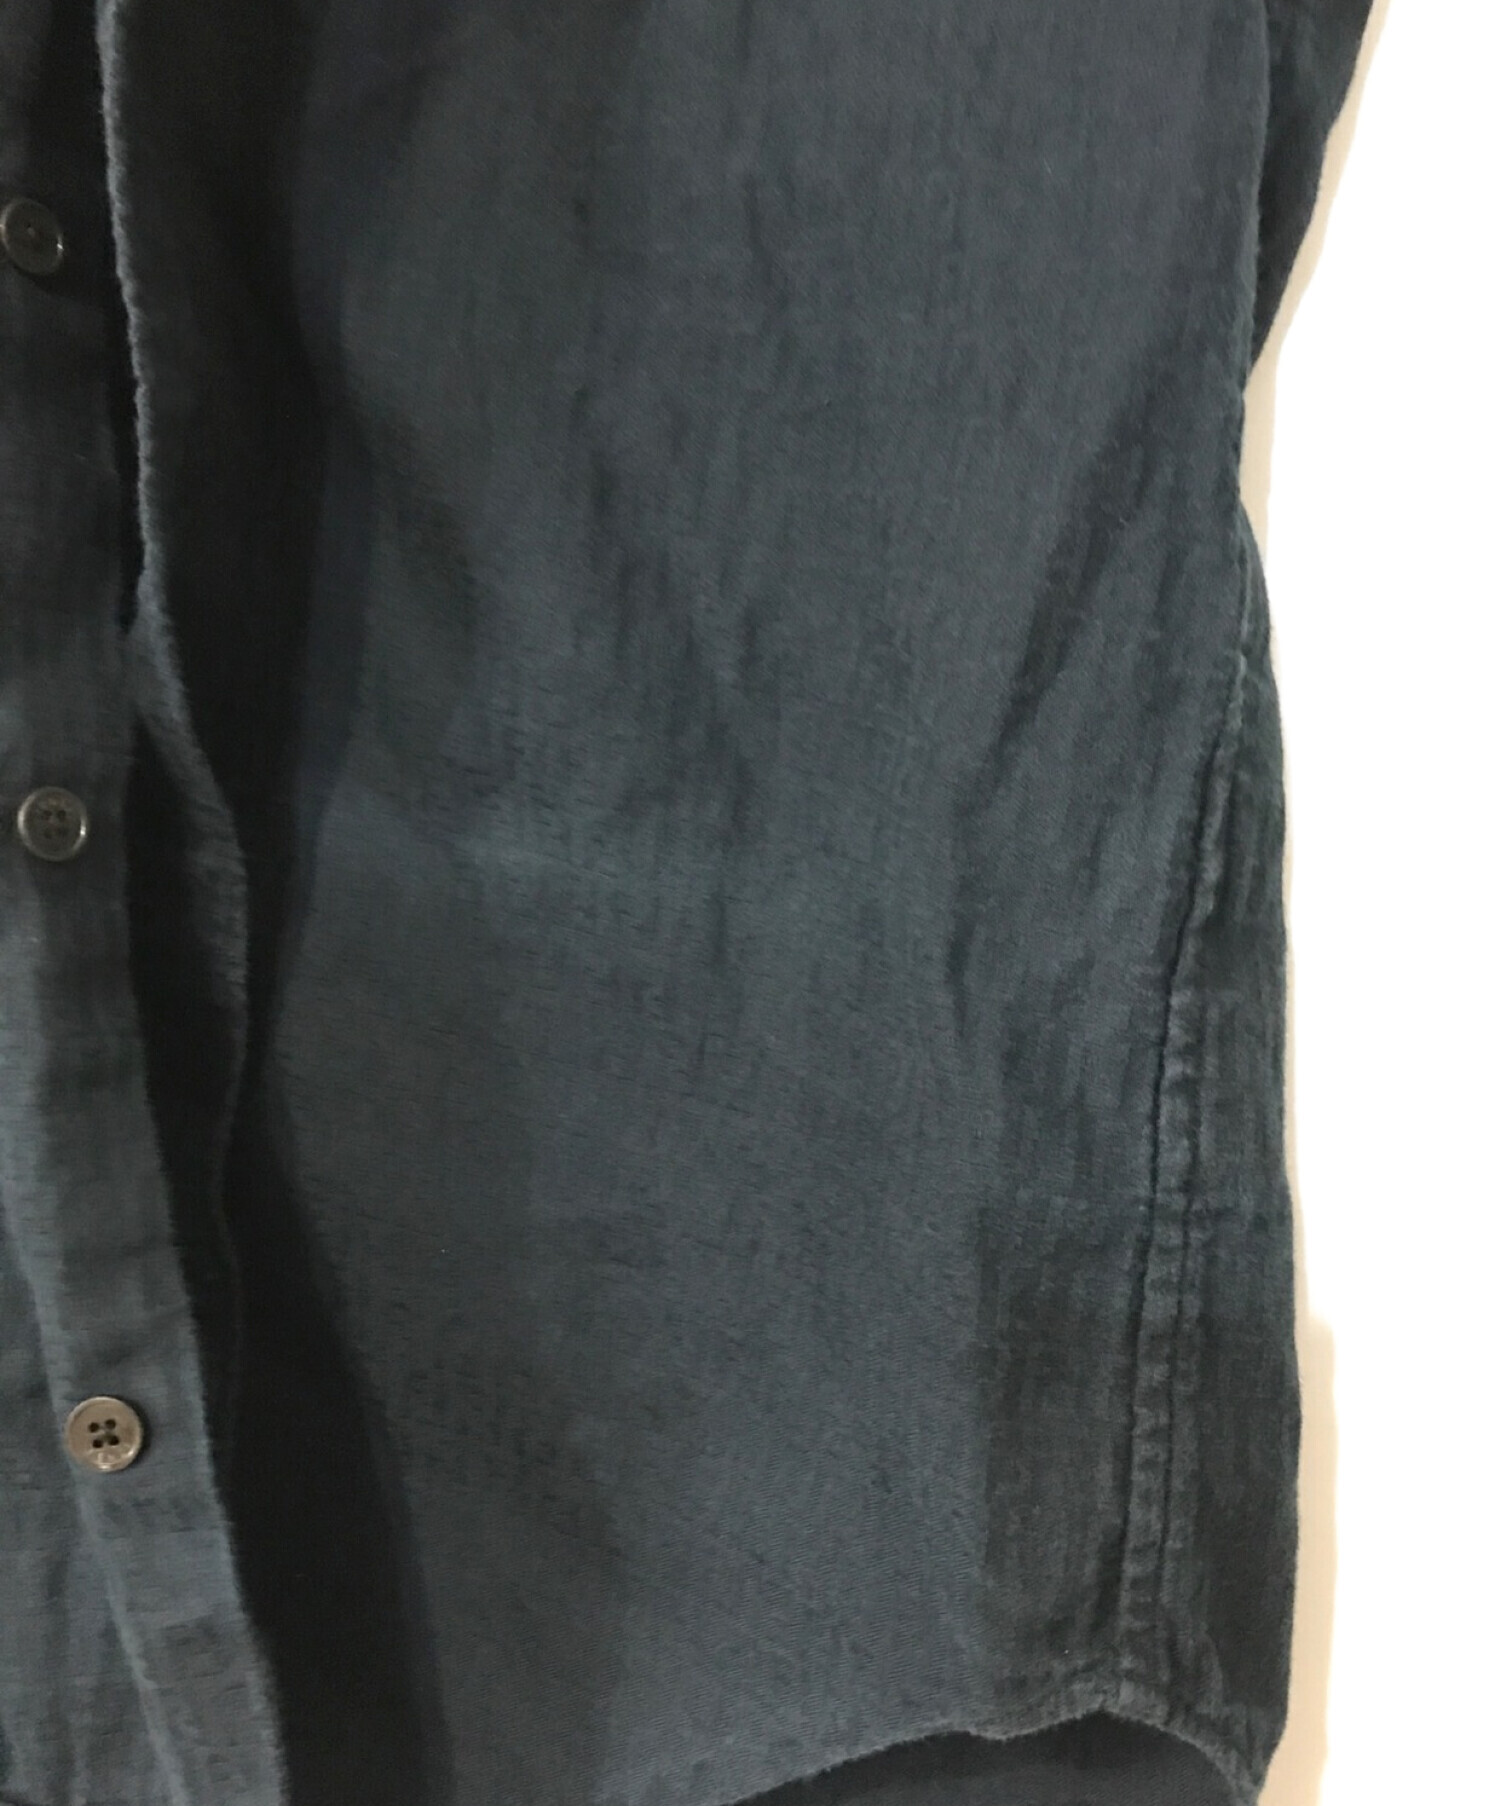 FENDI (フェンディ) 半袖シャツ ネイビー サイズ:39